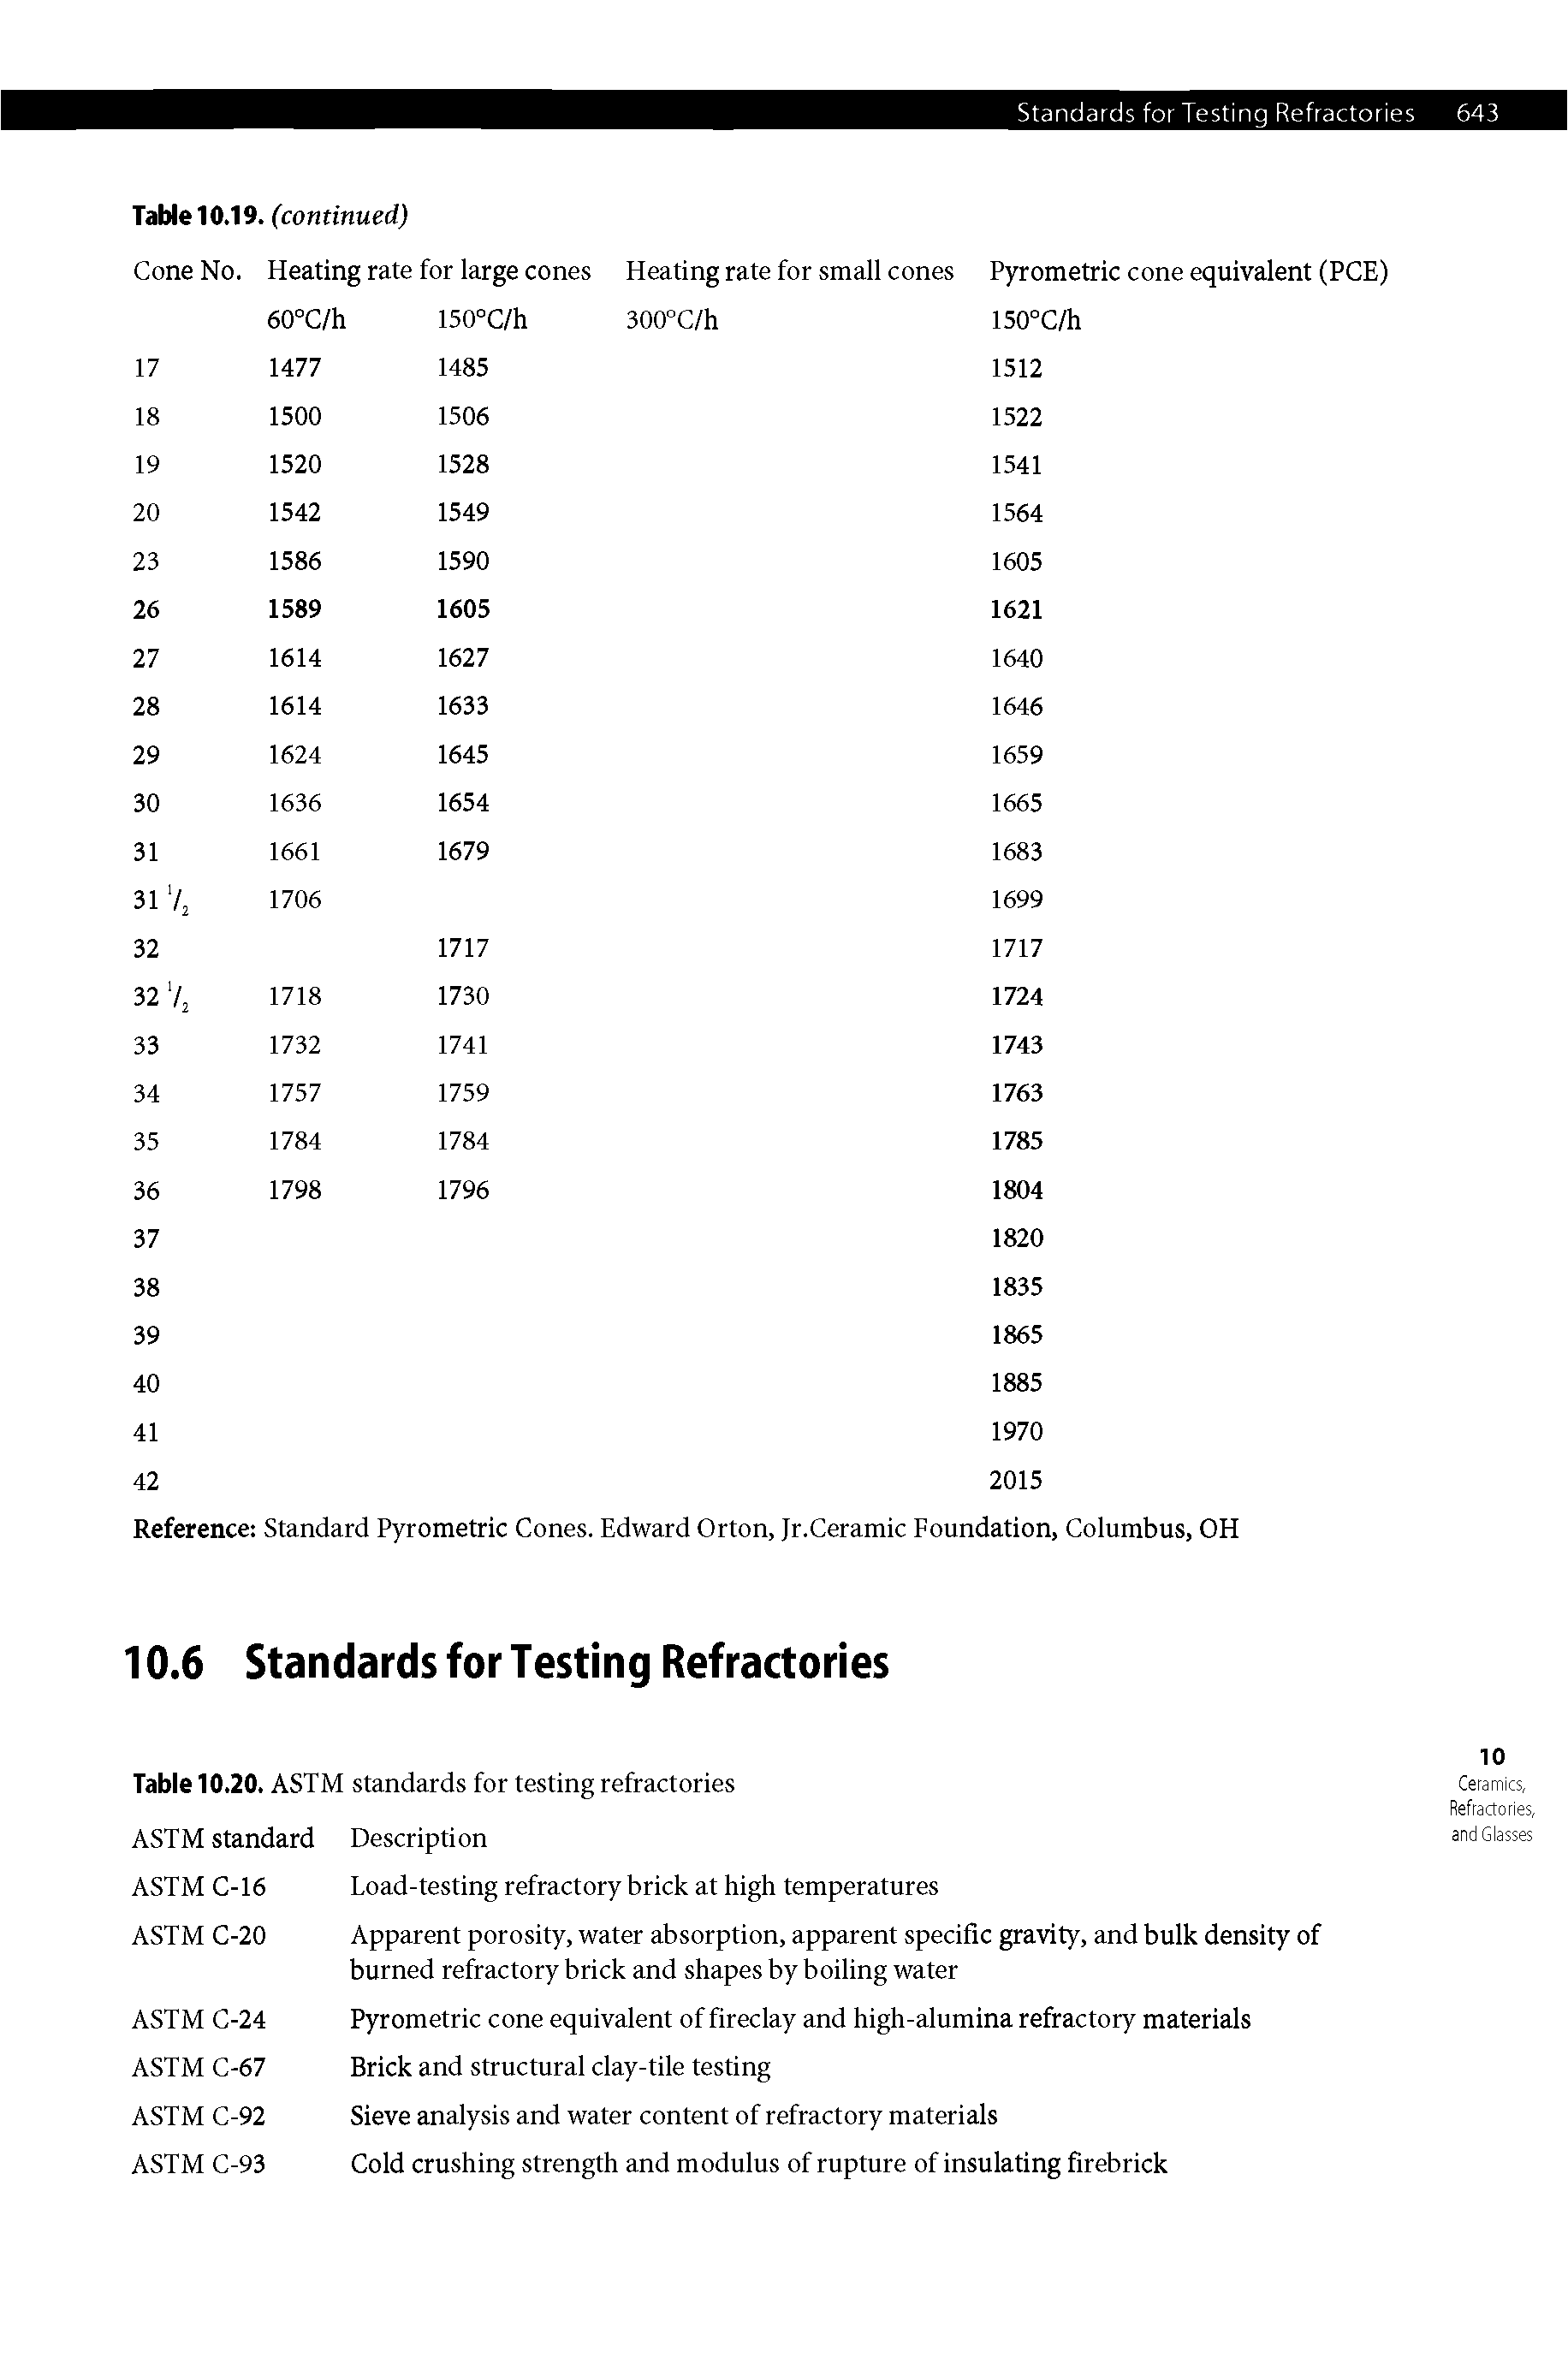 Table 10.20. ASTM standards for testing refractories ASTM standard Description...